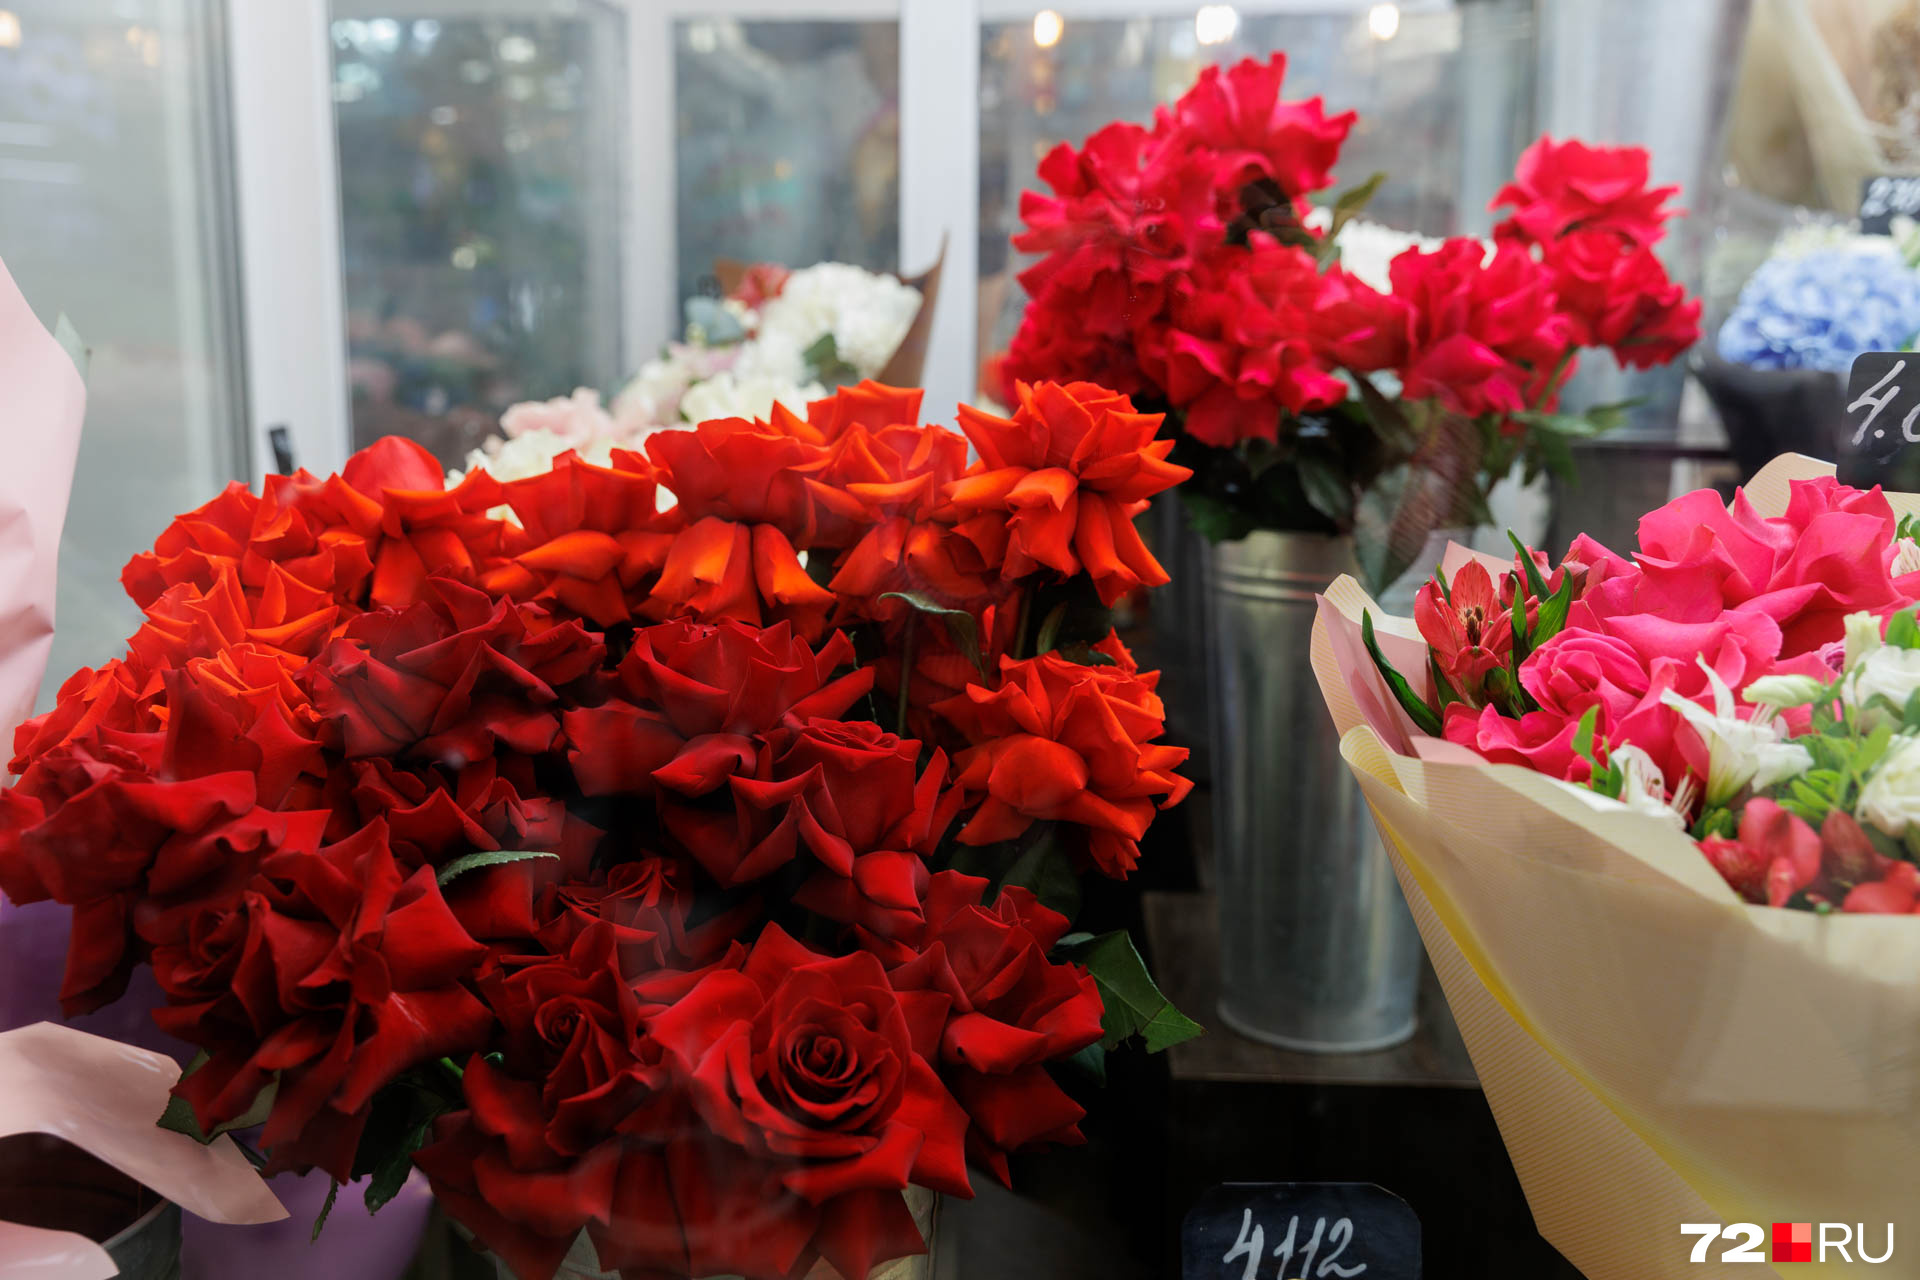 И хотя эксперты по этикету не советуют дарить учителям цветы красных оттенков, устоять очень сложно. Посмотрите на эти элегантные розы. Эти сорта с вывернутыми лепестками называются французскими или королевскими. Цена — от 300 рублей за штуку